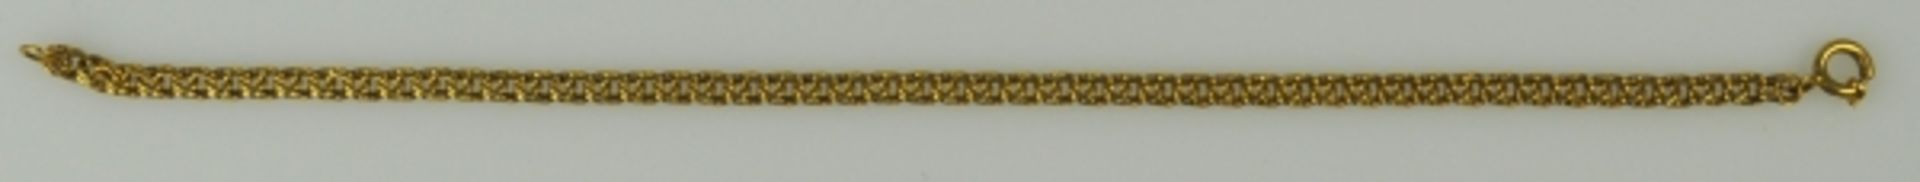 FEINE ARMKETTE durchbrochene Glieder mit Ringverschluß, Gelbgold 18ct, 3,8g, L 17cm